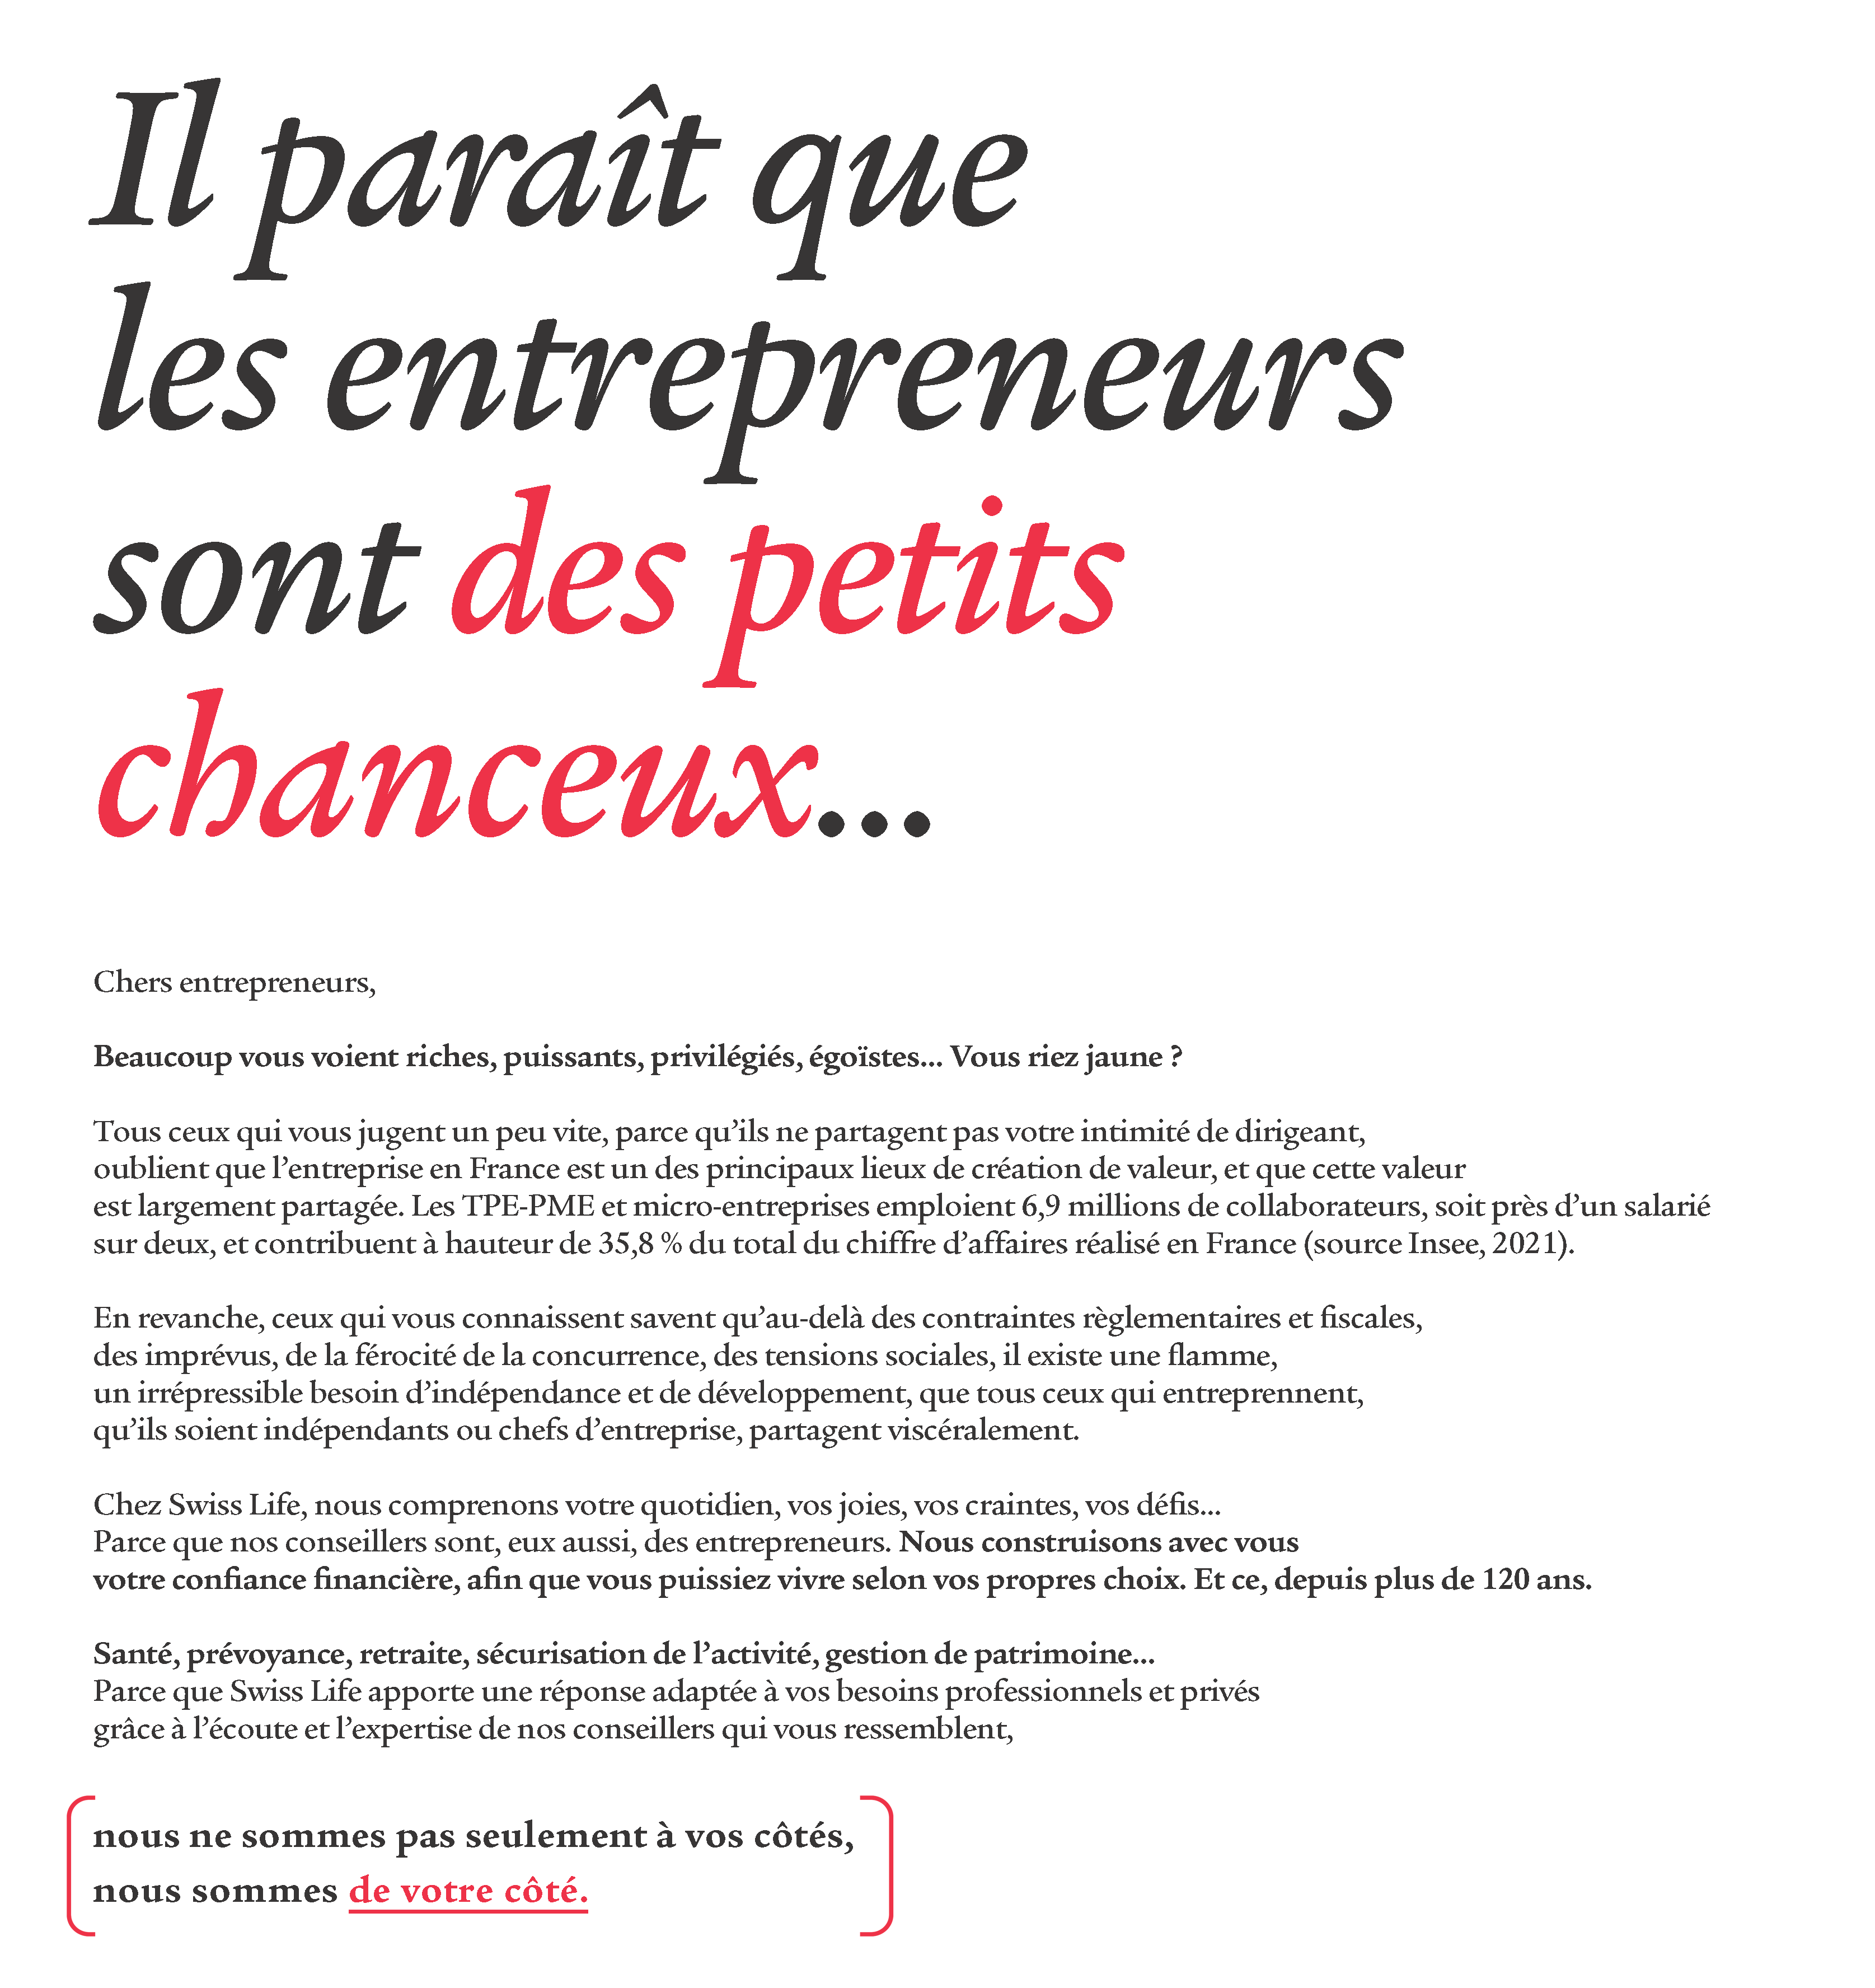 Manifesto, entrepreneurs nous sommes de votre côté